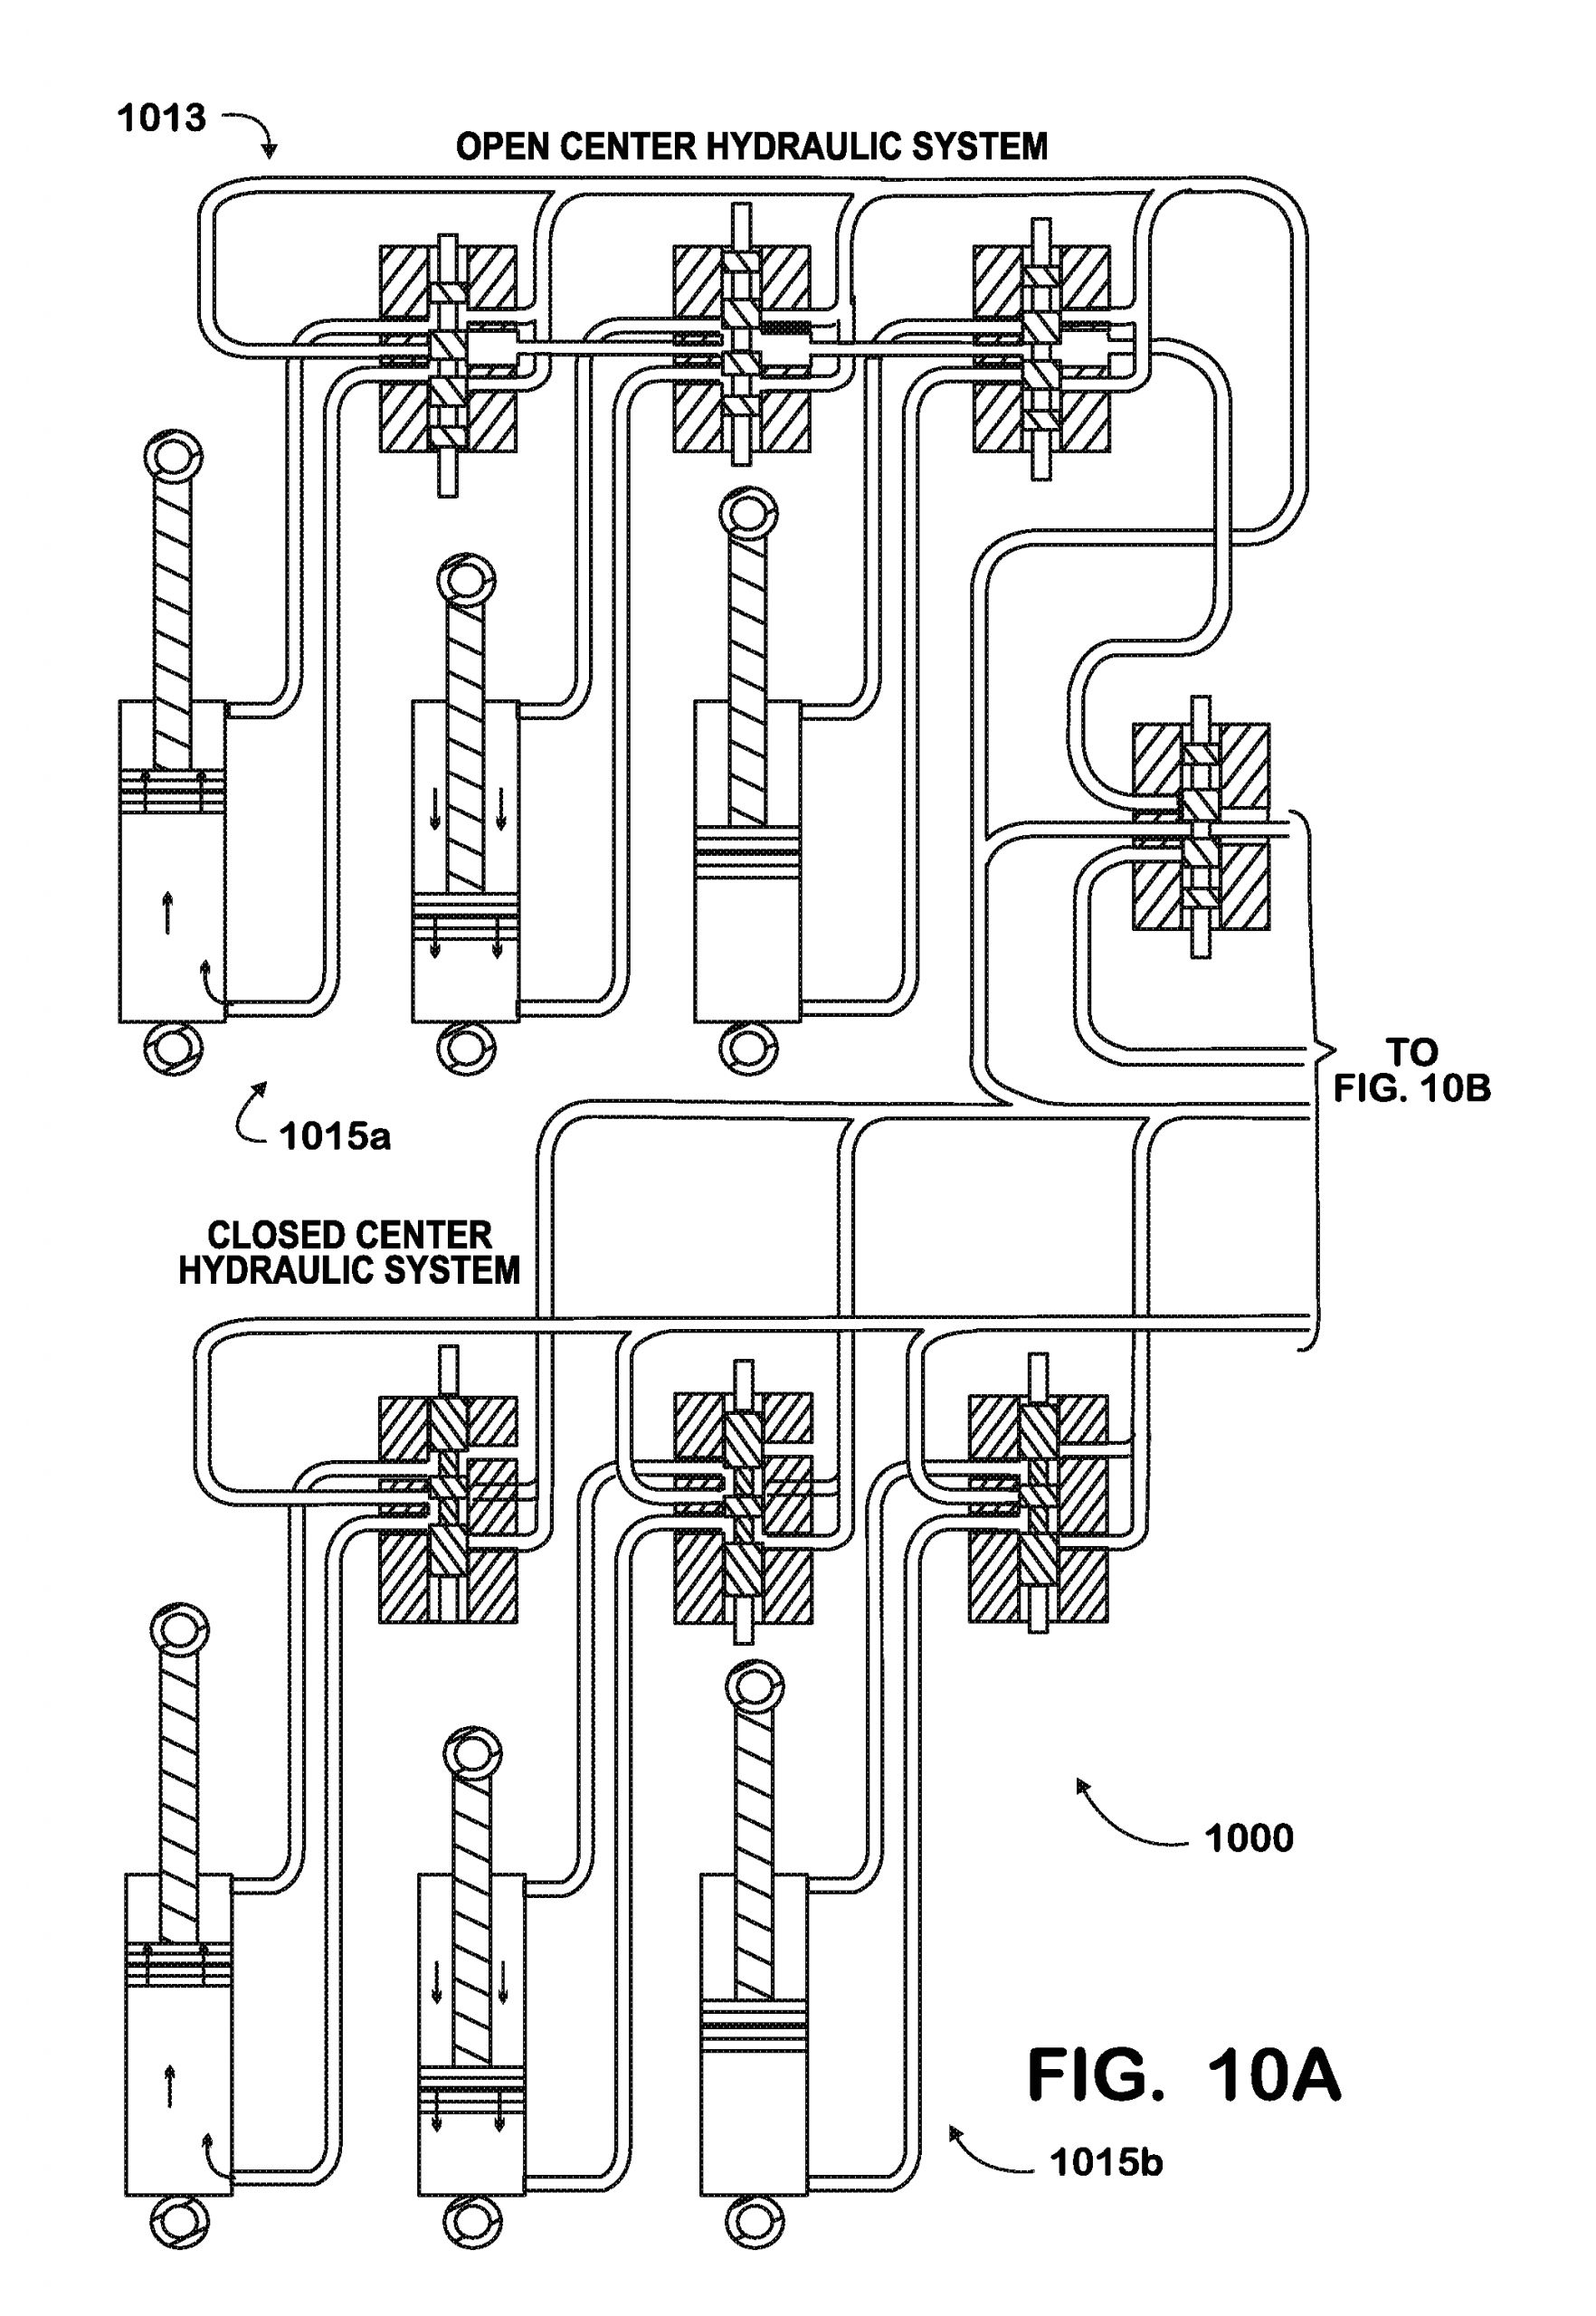 allison transmission shifter wiring diagram